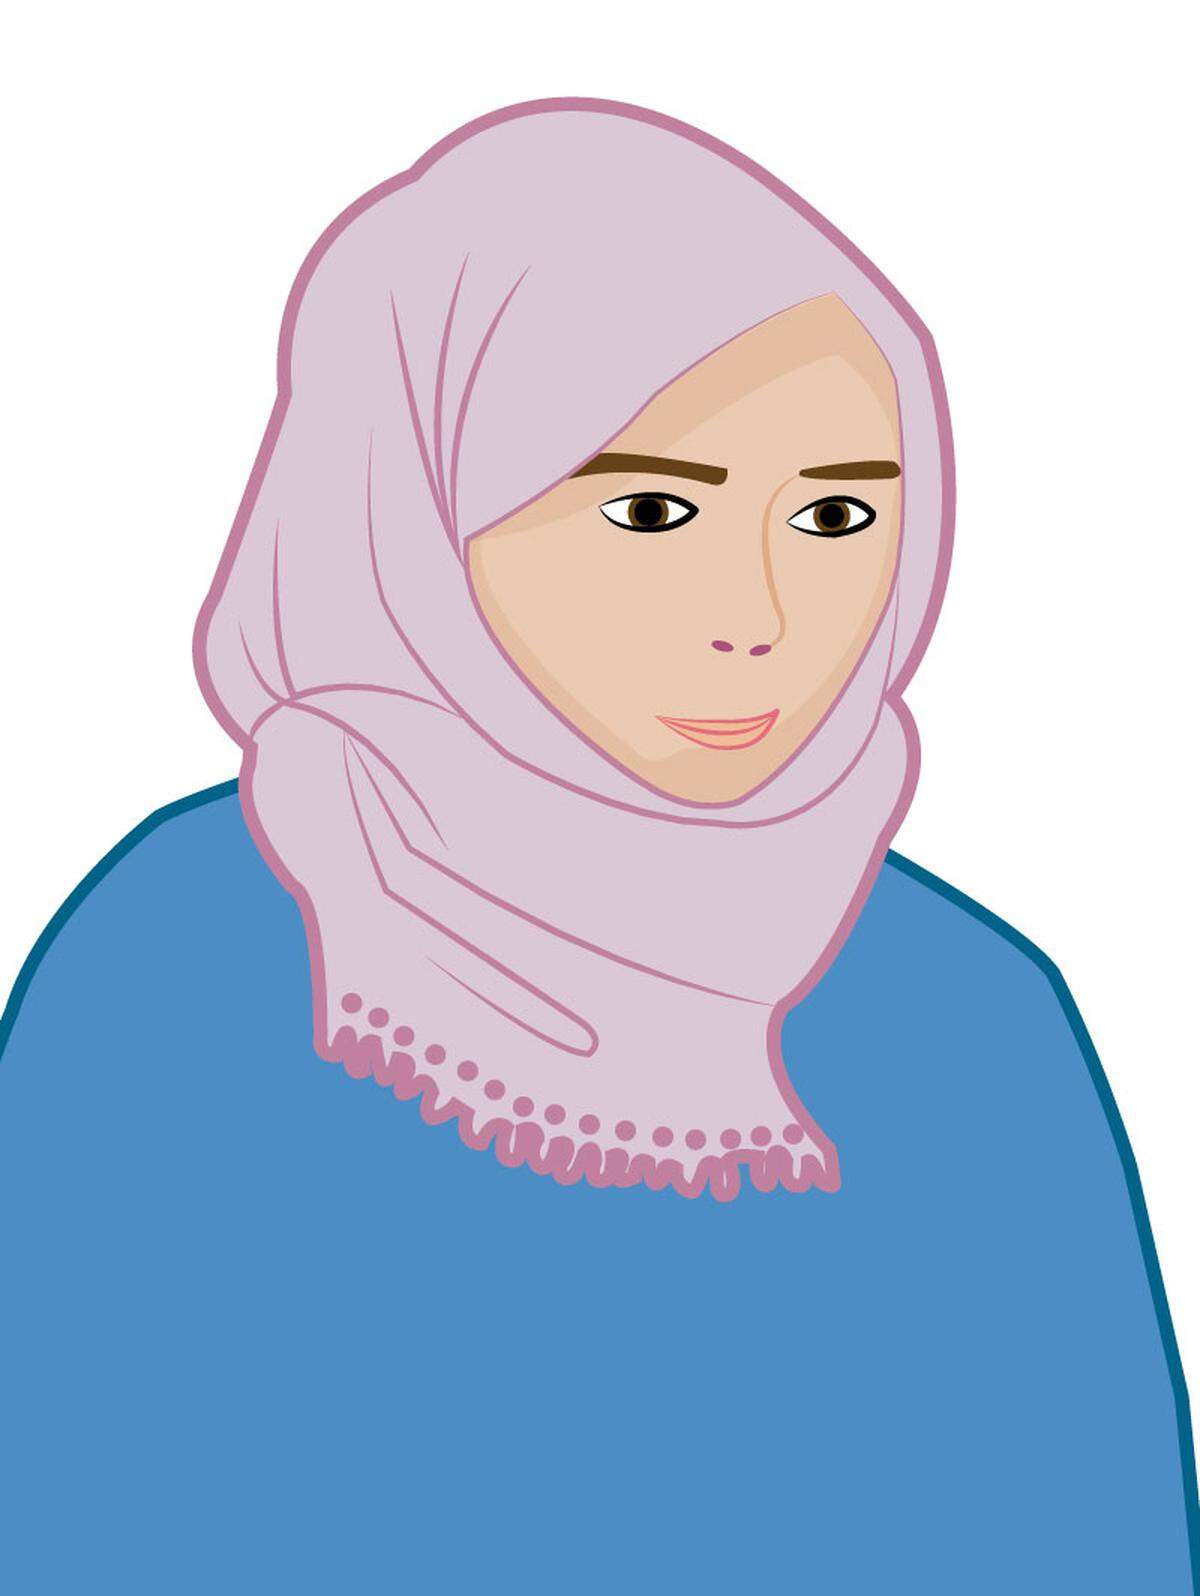 Kopftuch, das Haare, Ohren, Hals und Ausschnitt bedecktVerbreitung:Gesamte islamische Welt